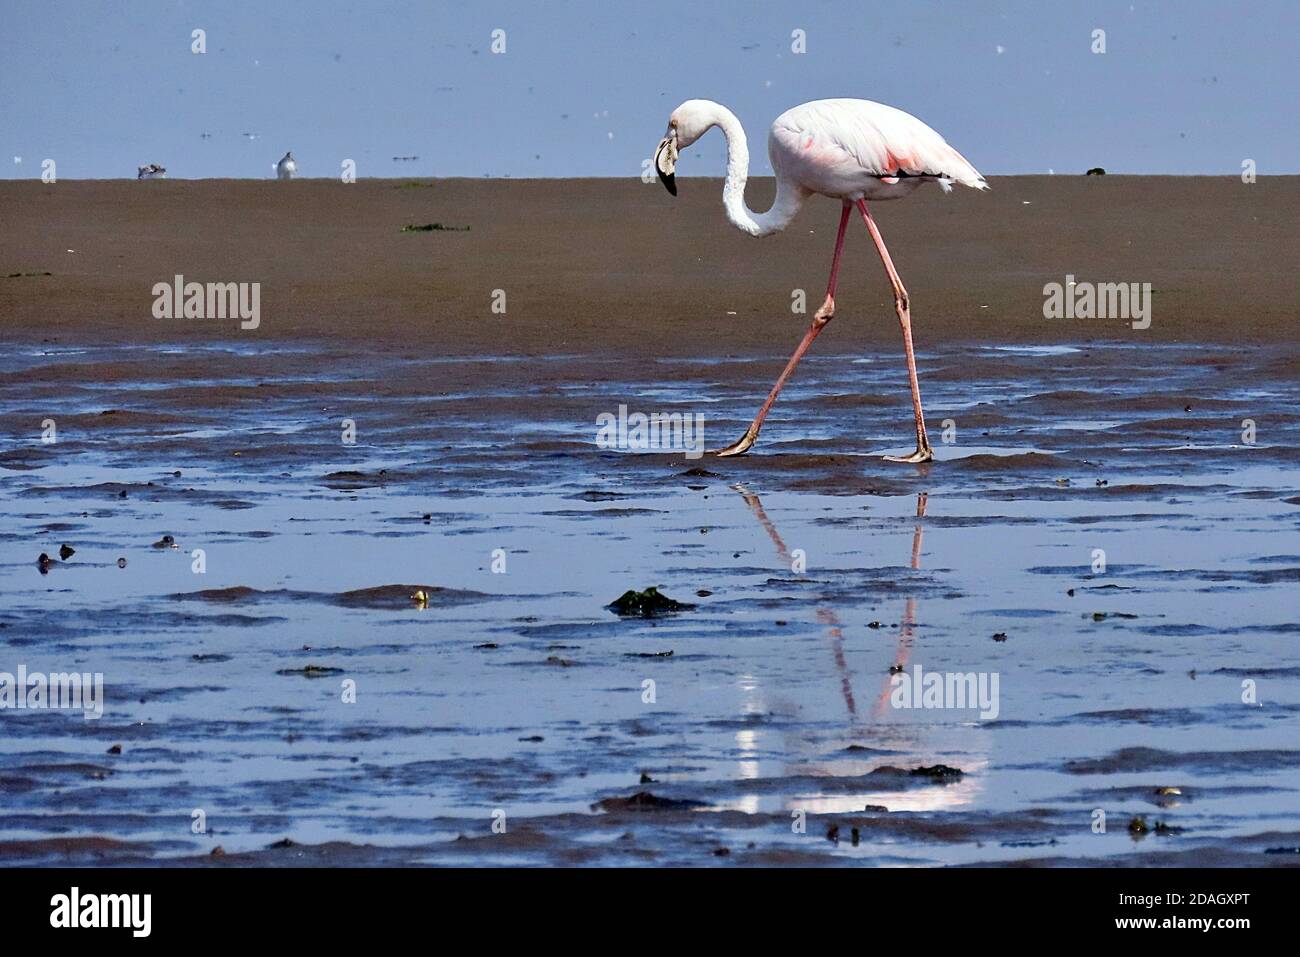 Un grand Flamingo (Phoenicopterus roseus) barboter dans l'eau salée peu profonde d'une réserve faunique de Walvis Bay, Erongo, Namibie Banque D'Images